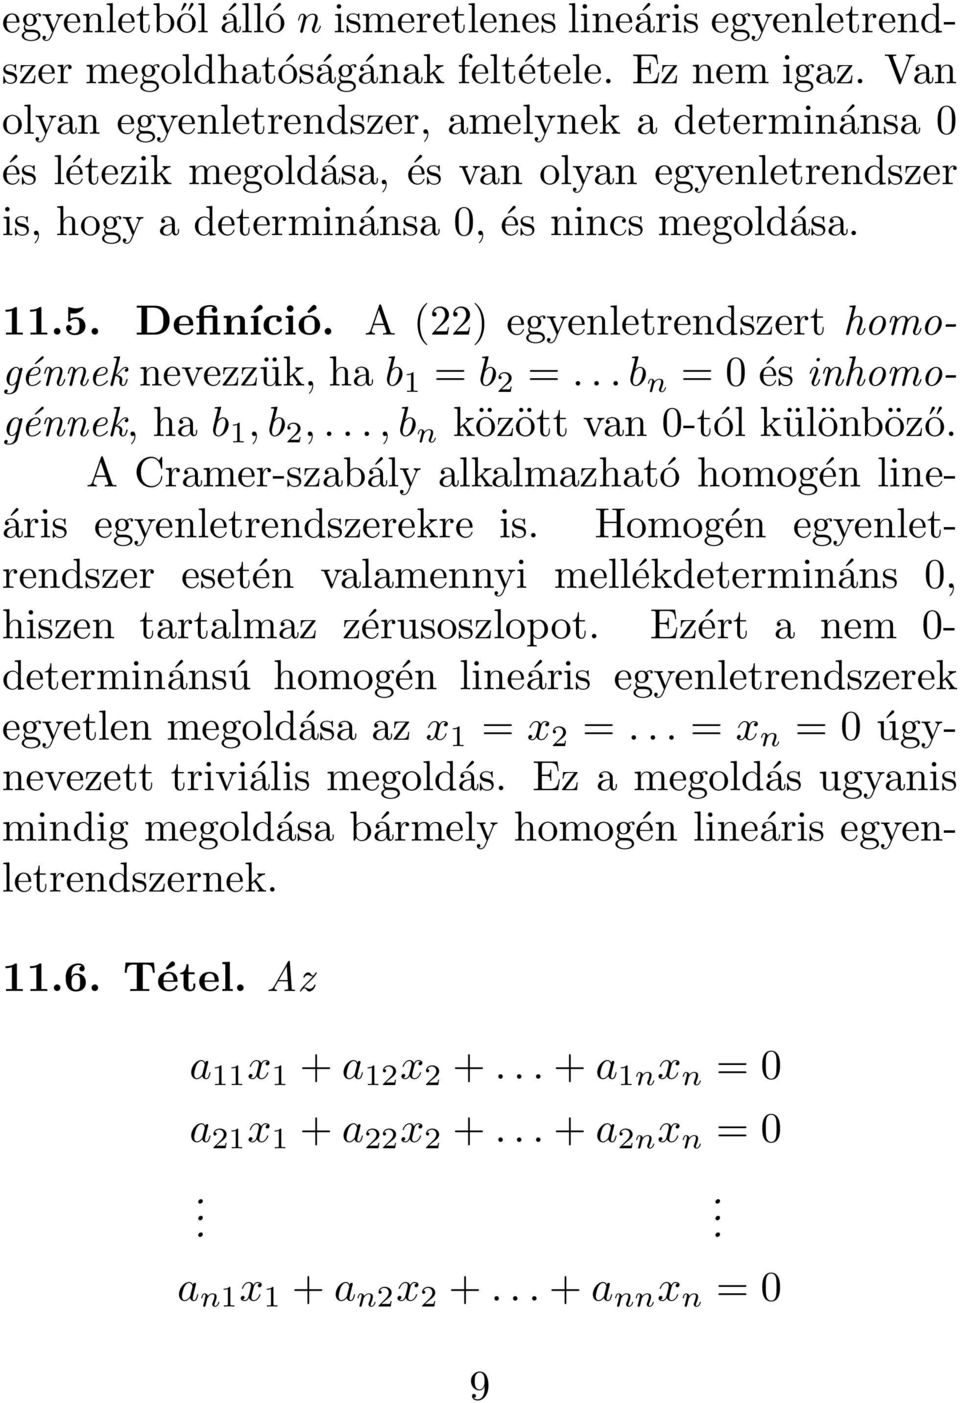 különböző A Cramer-szabály alkalmazható homogén lineáris egyenletrendszerekre is Homogén egyenletrendszer esetén valamennyi mellékdetermináns 0, hiszen tartalmaz zérusoszlopot Ezért a nem 0-